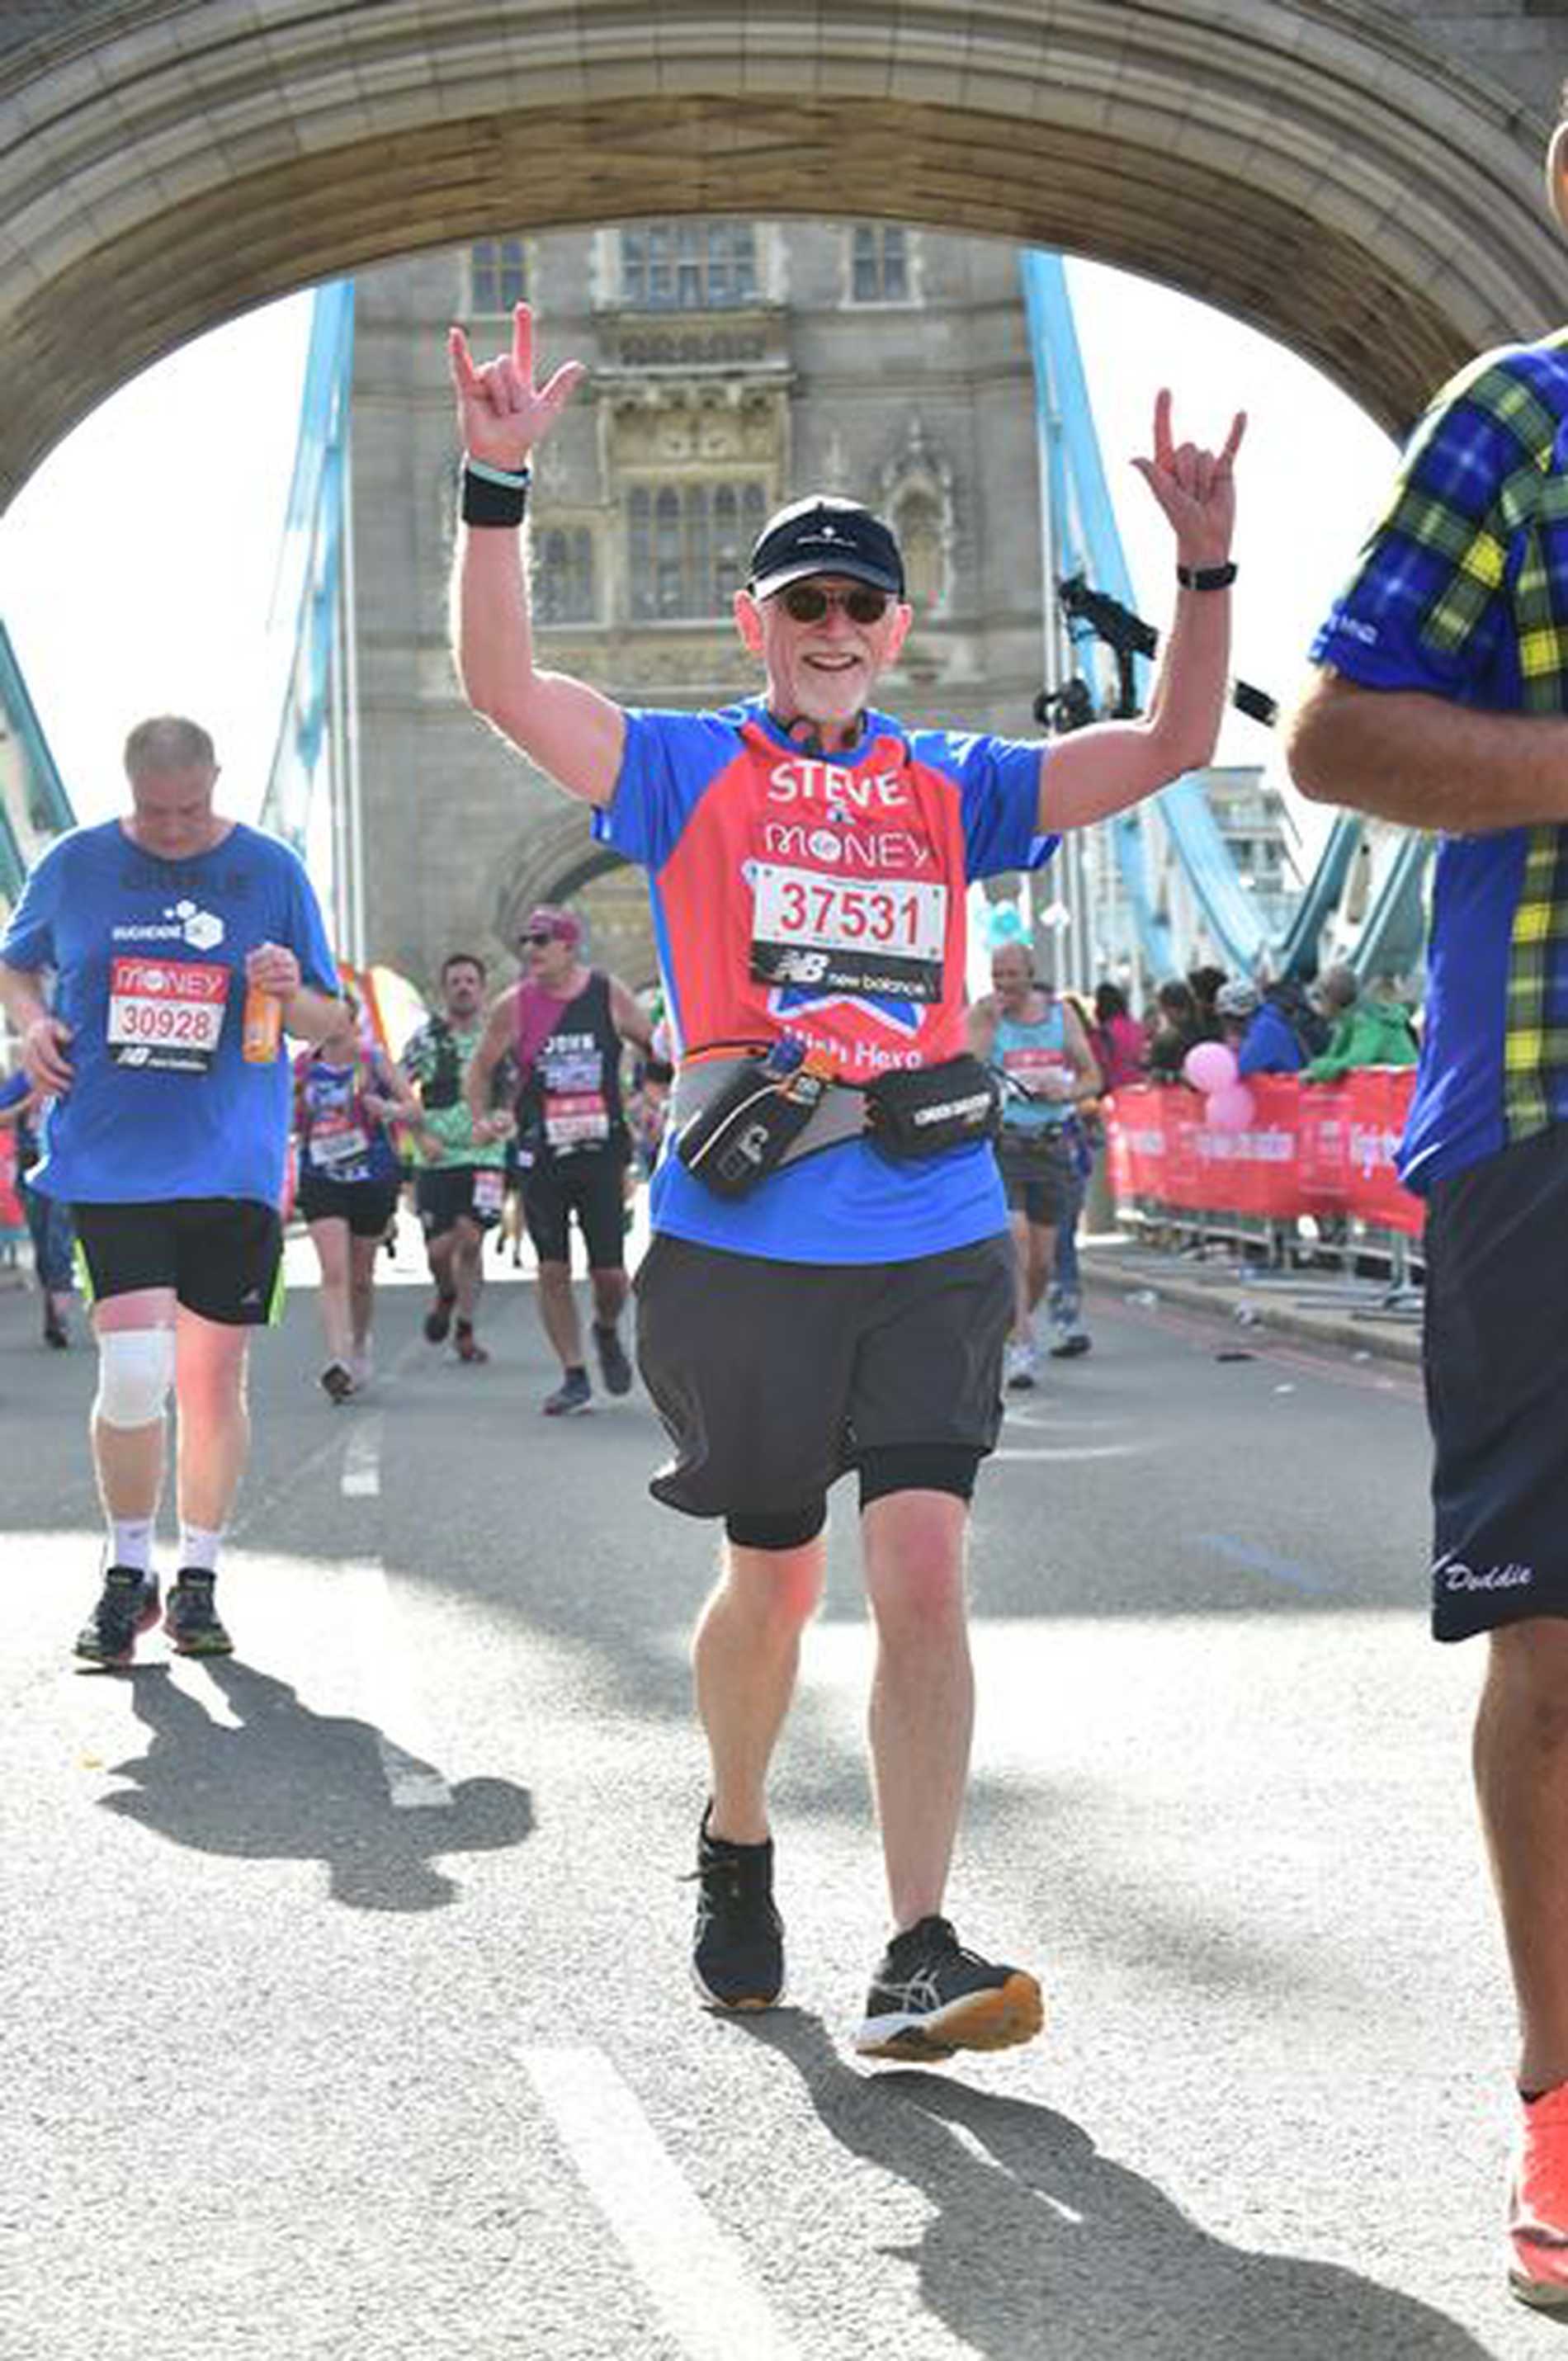 #WishHero, Steve running across Tower Bridge during the 2021 London Marathon.